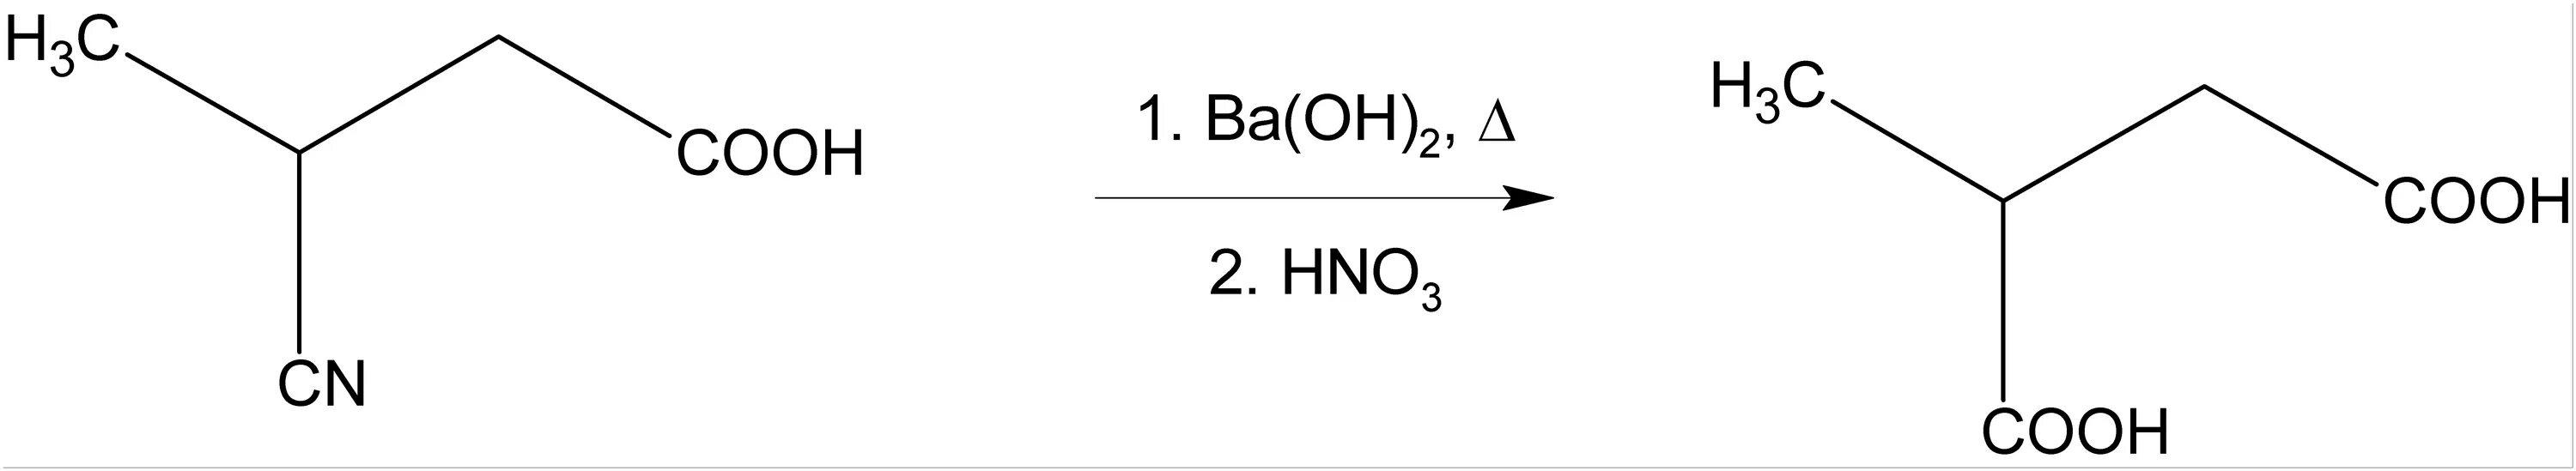 Гидроксид бария n2o5. Гидролиз нитрилов. Метилянтарная кислота. Сложный эфир и гидроксид натрия. Нитрил метилянтарной кислоты.